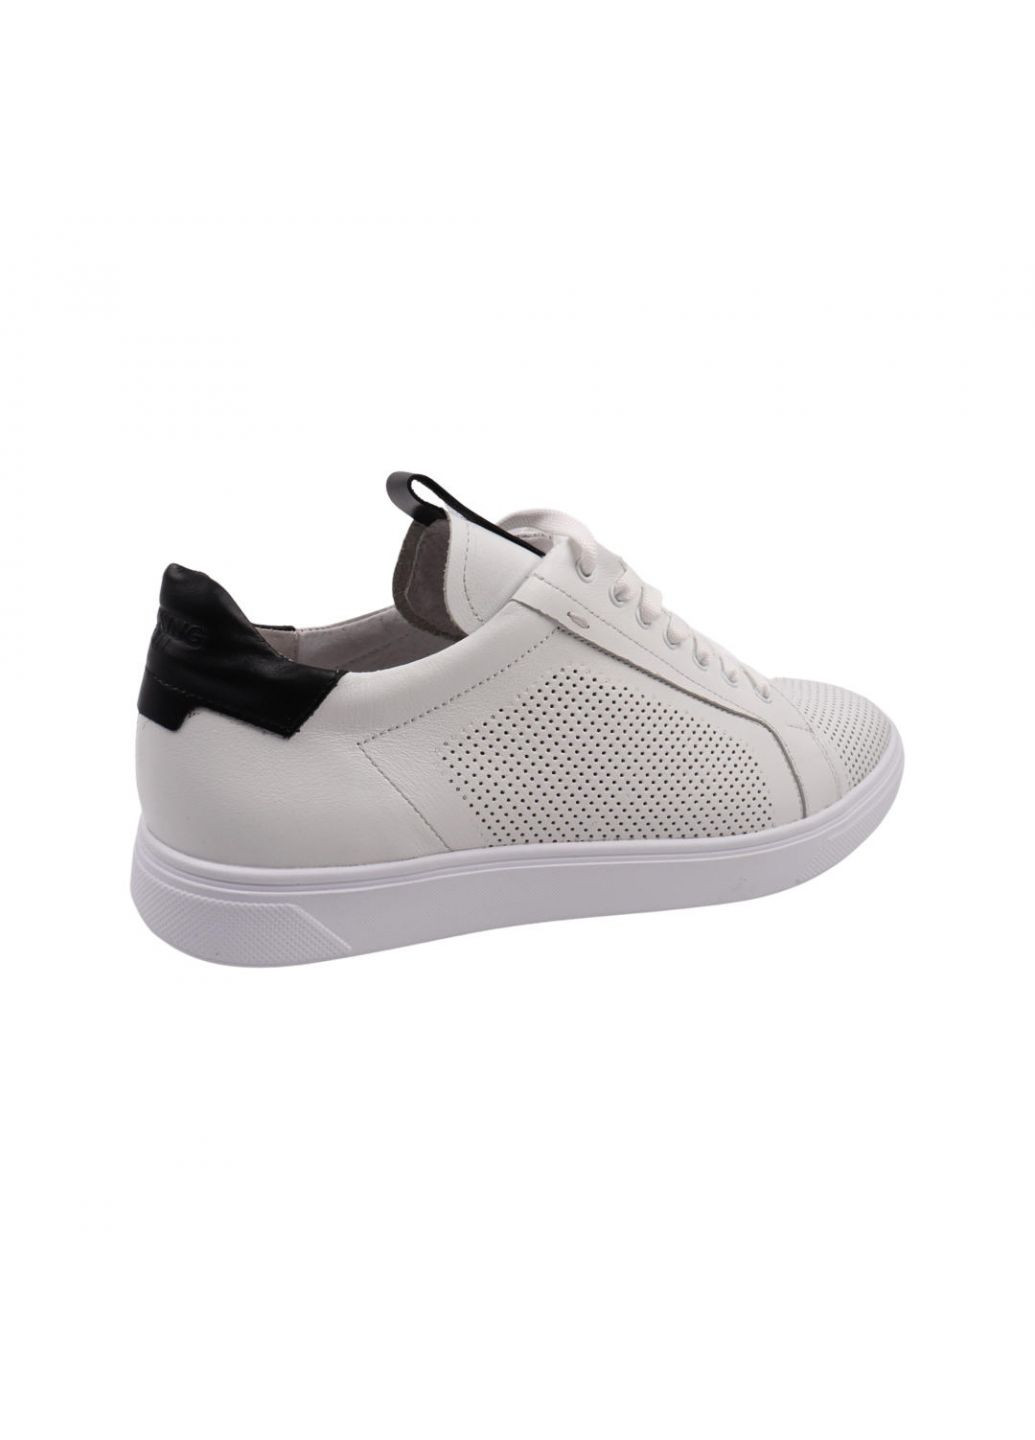 Белые кеды мужские белые натуральная кожа Maxus Shoes 98-22LTCP